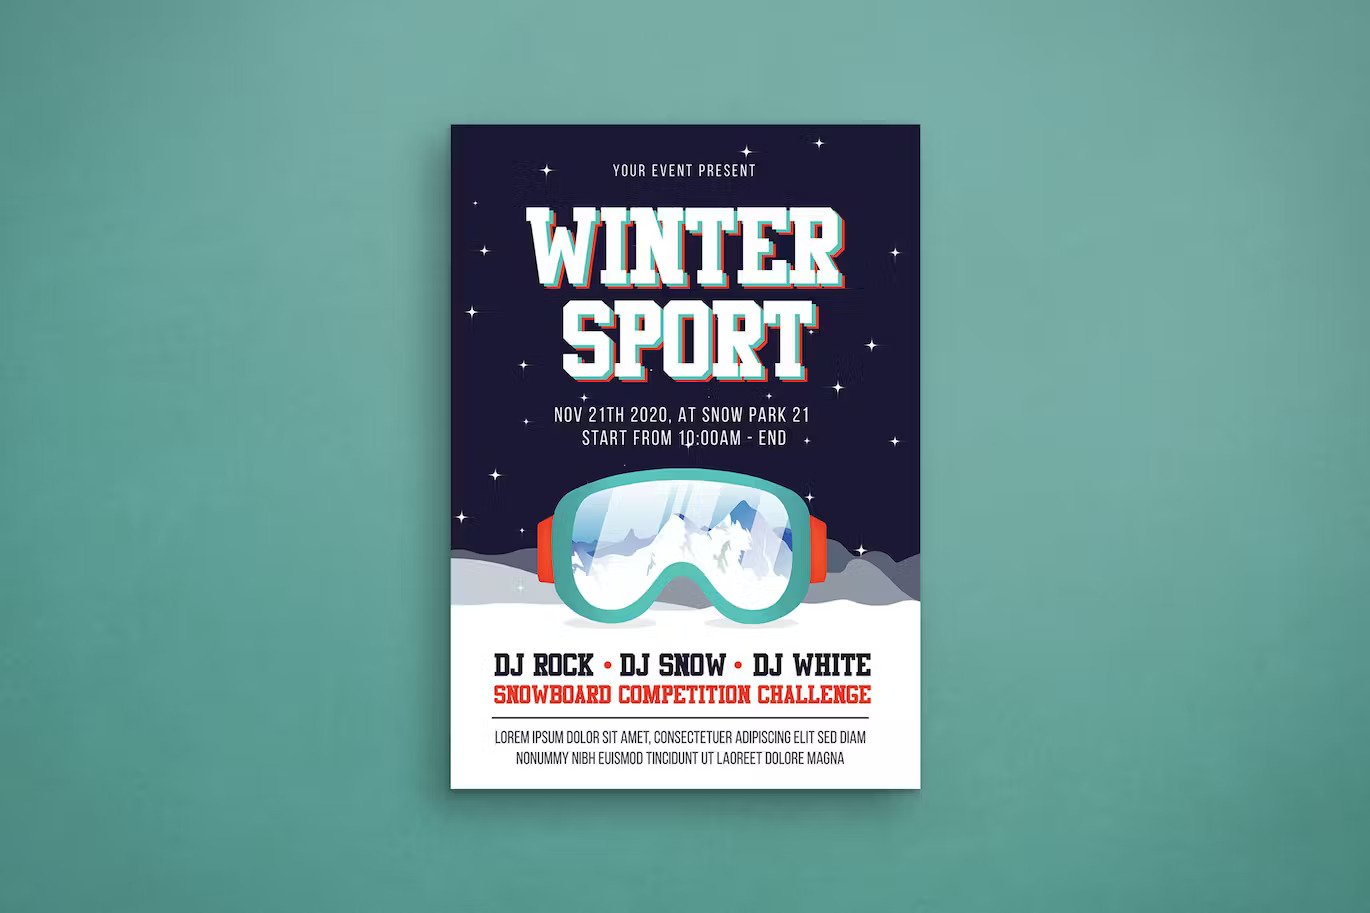 A winter sport flyer template